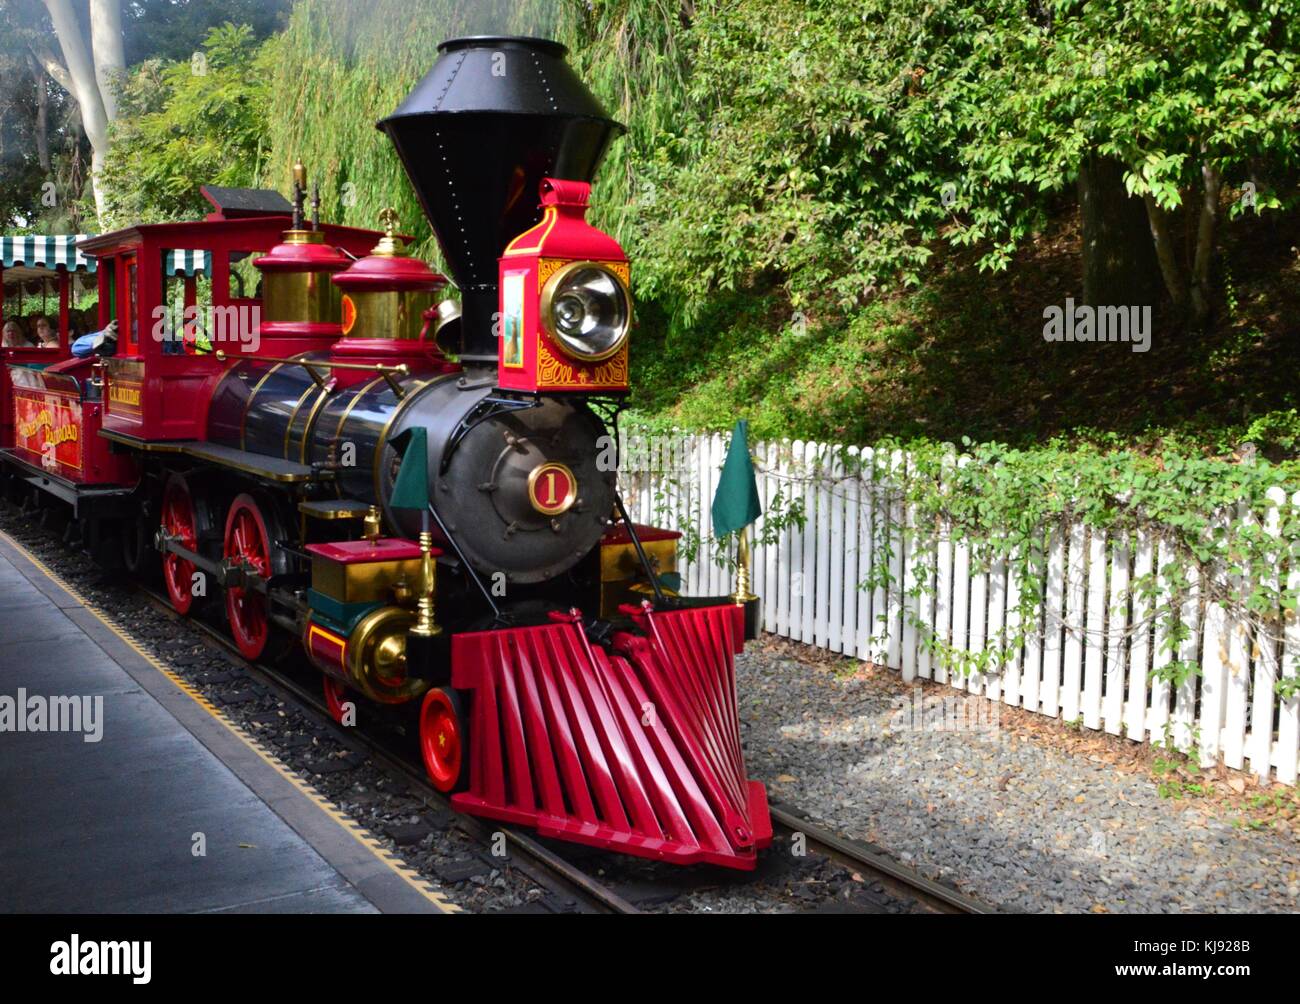 Disneyland train Stock Photo